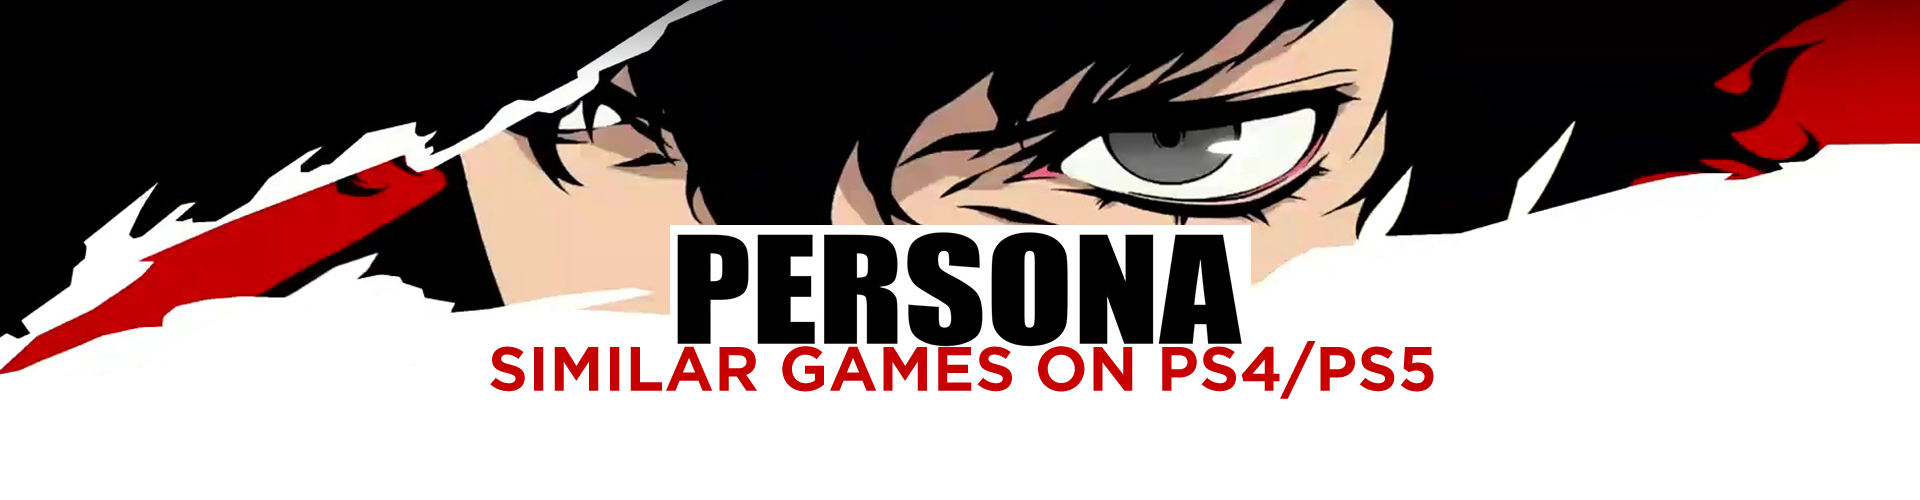 Los 10 Mejores Juegos Como Persona en PS4/PS5